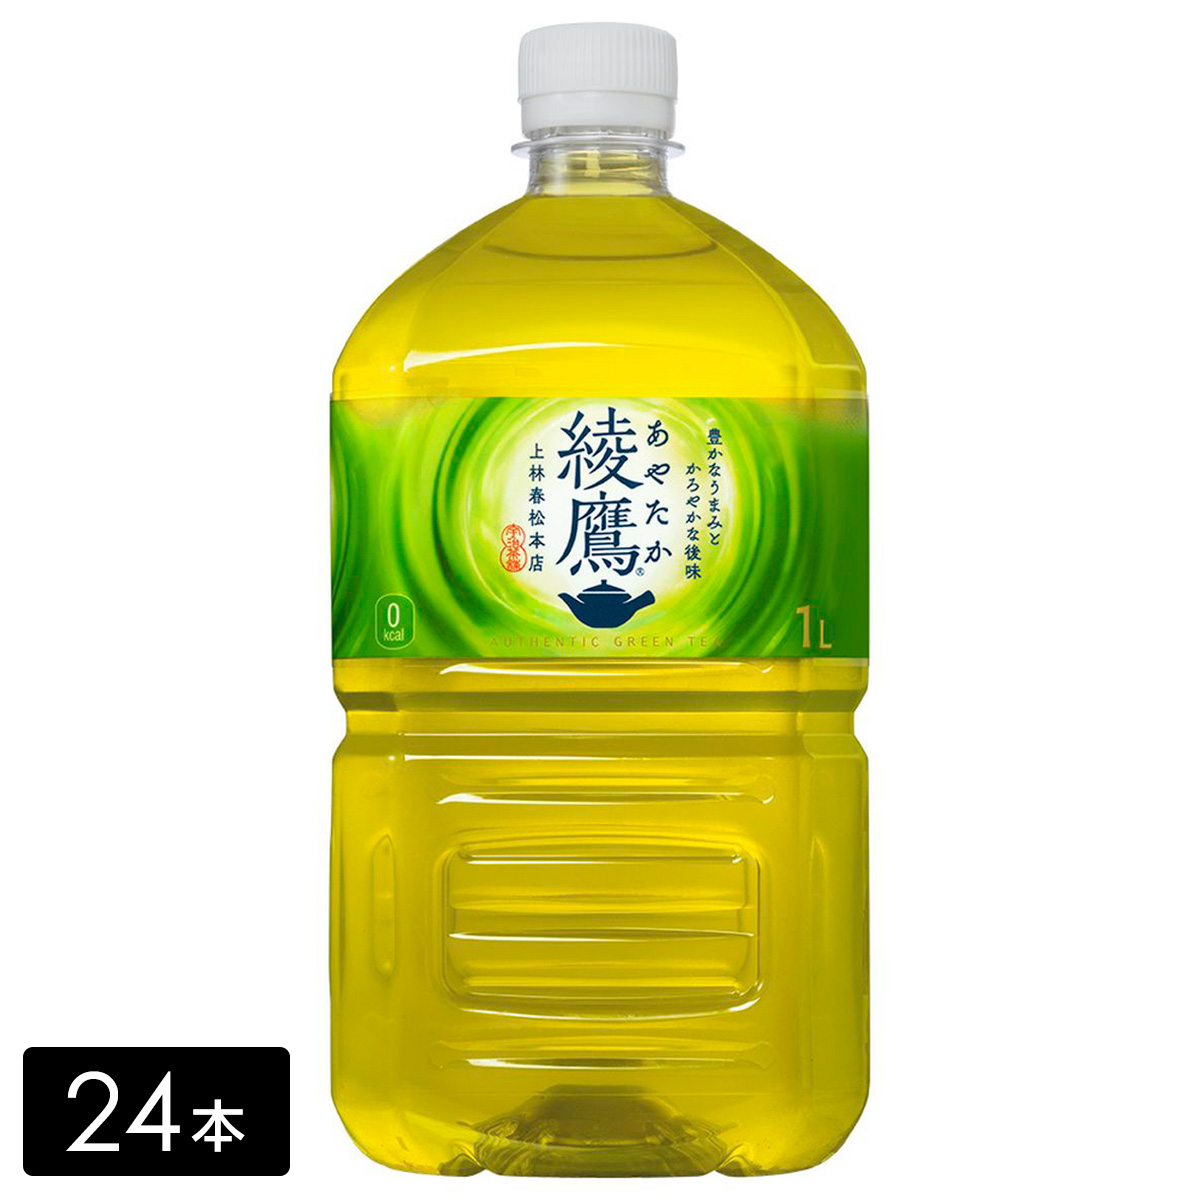 [送料無料]綾鷹 緑茶 1L×24本(12本×2箱) お茶 ペットボトル ケース売り まとめ買い